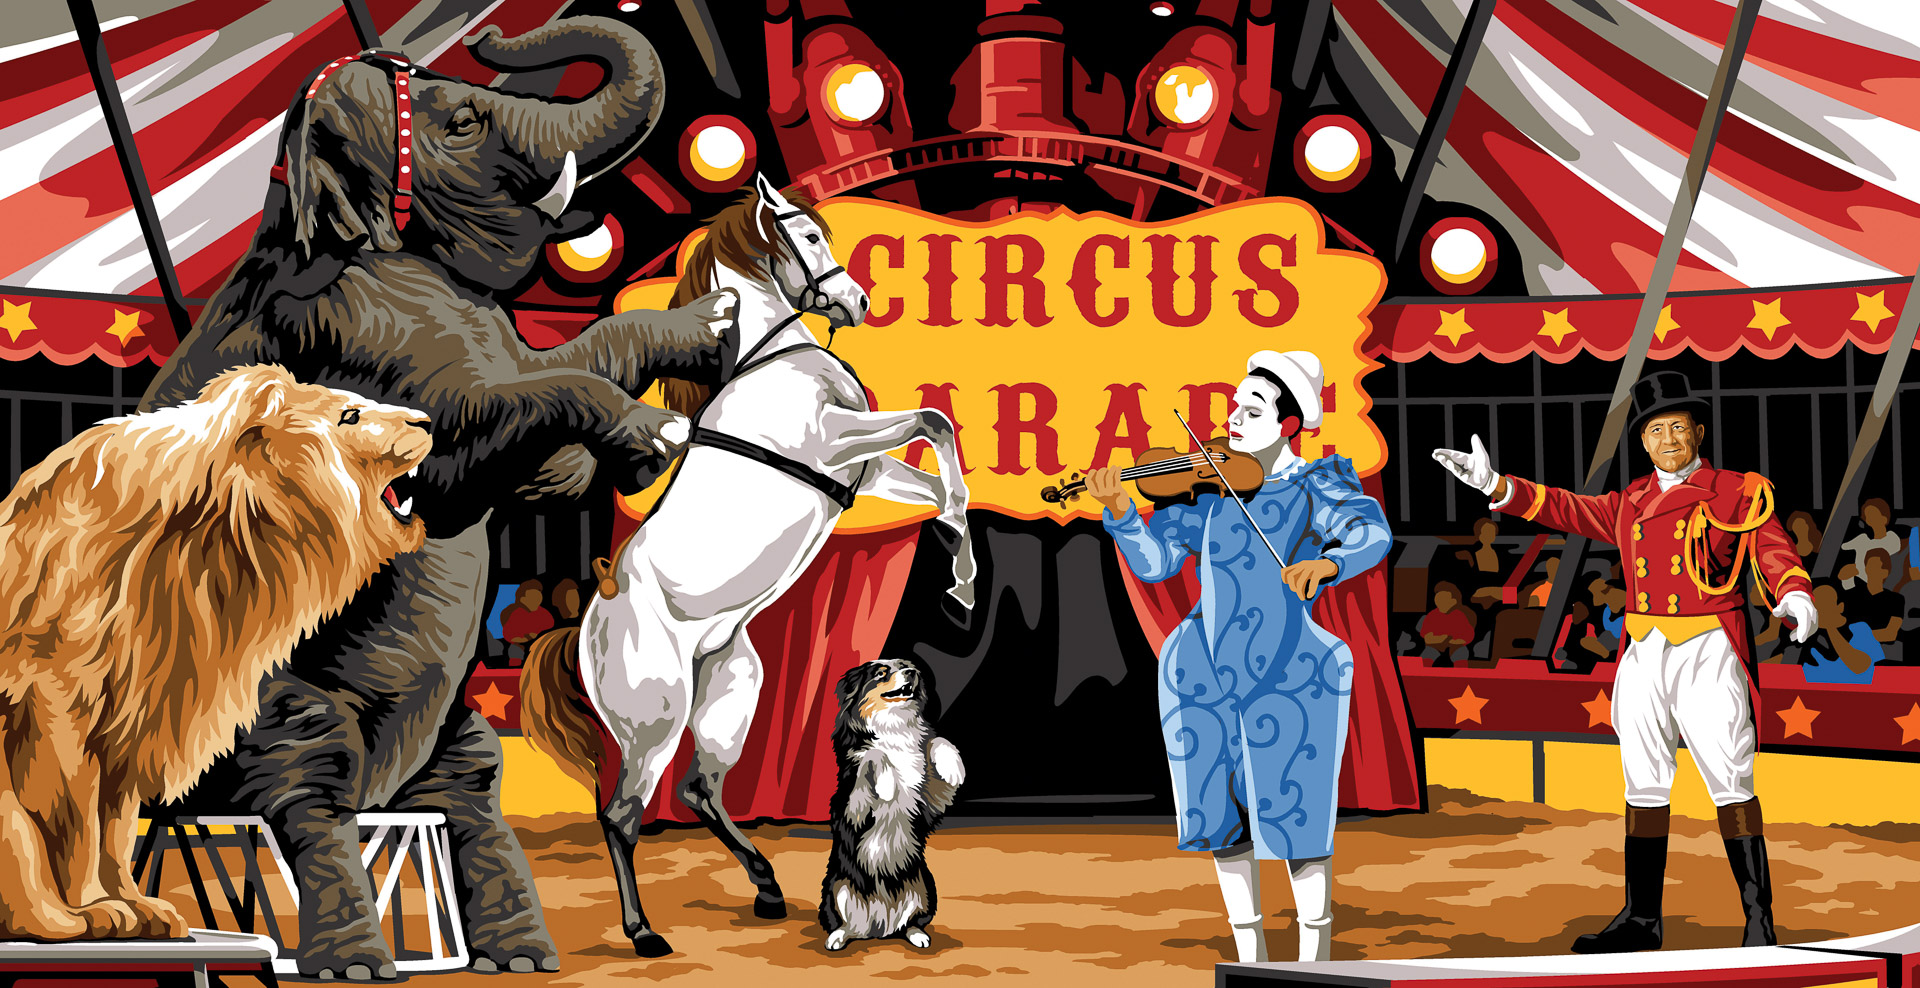 Circus parade 3B COM